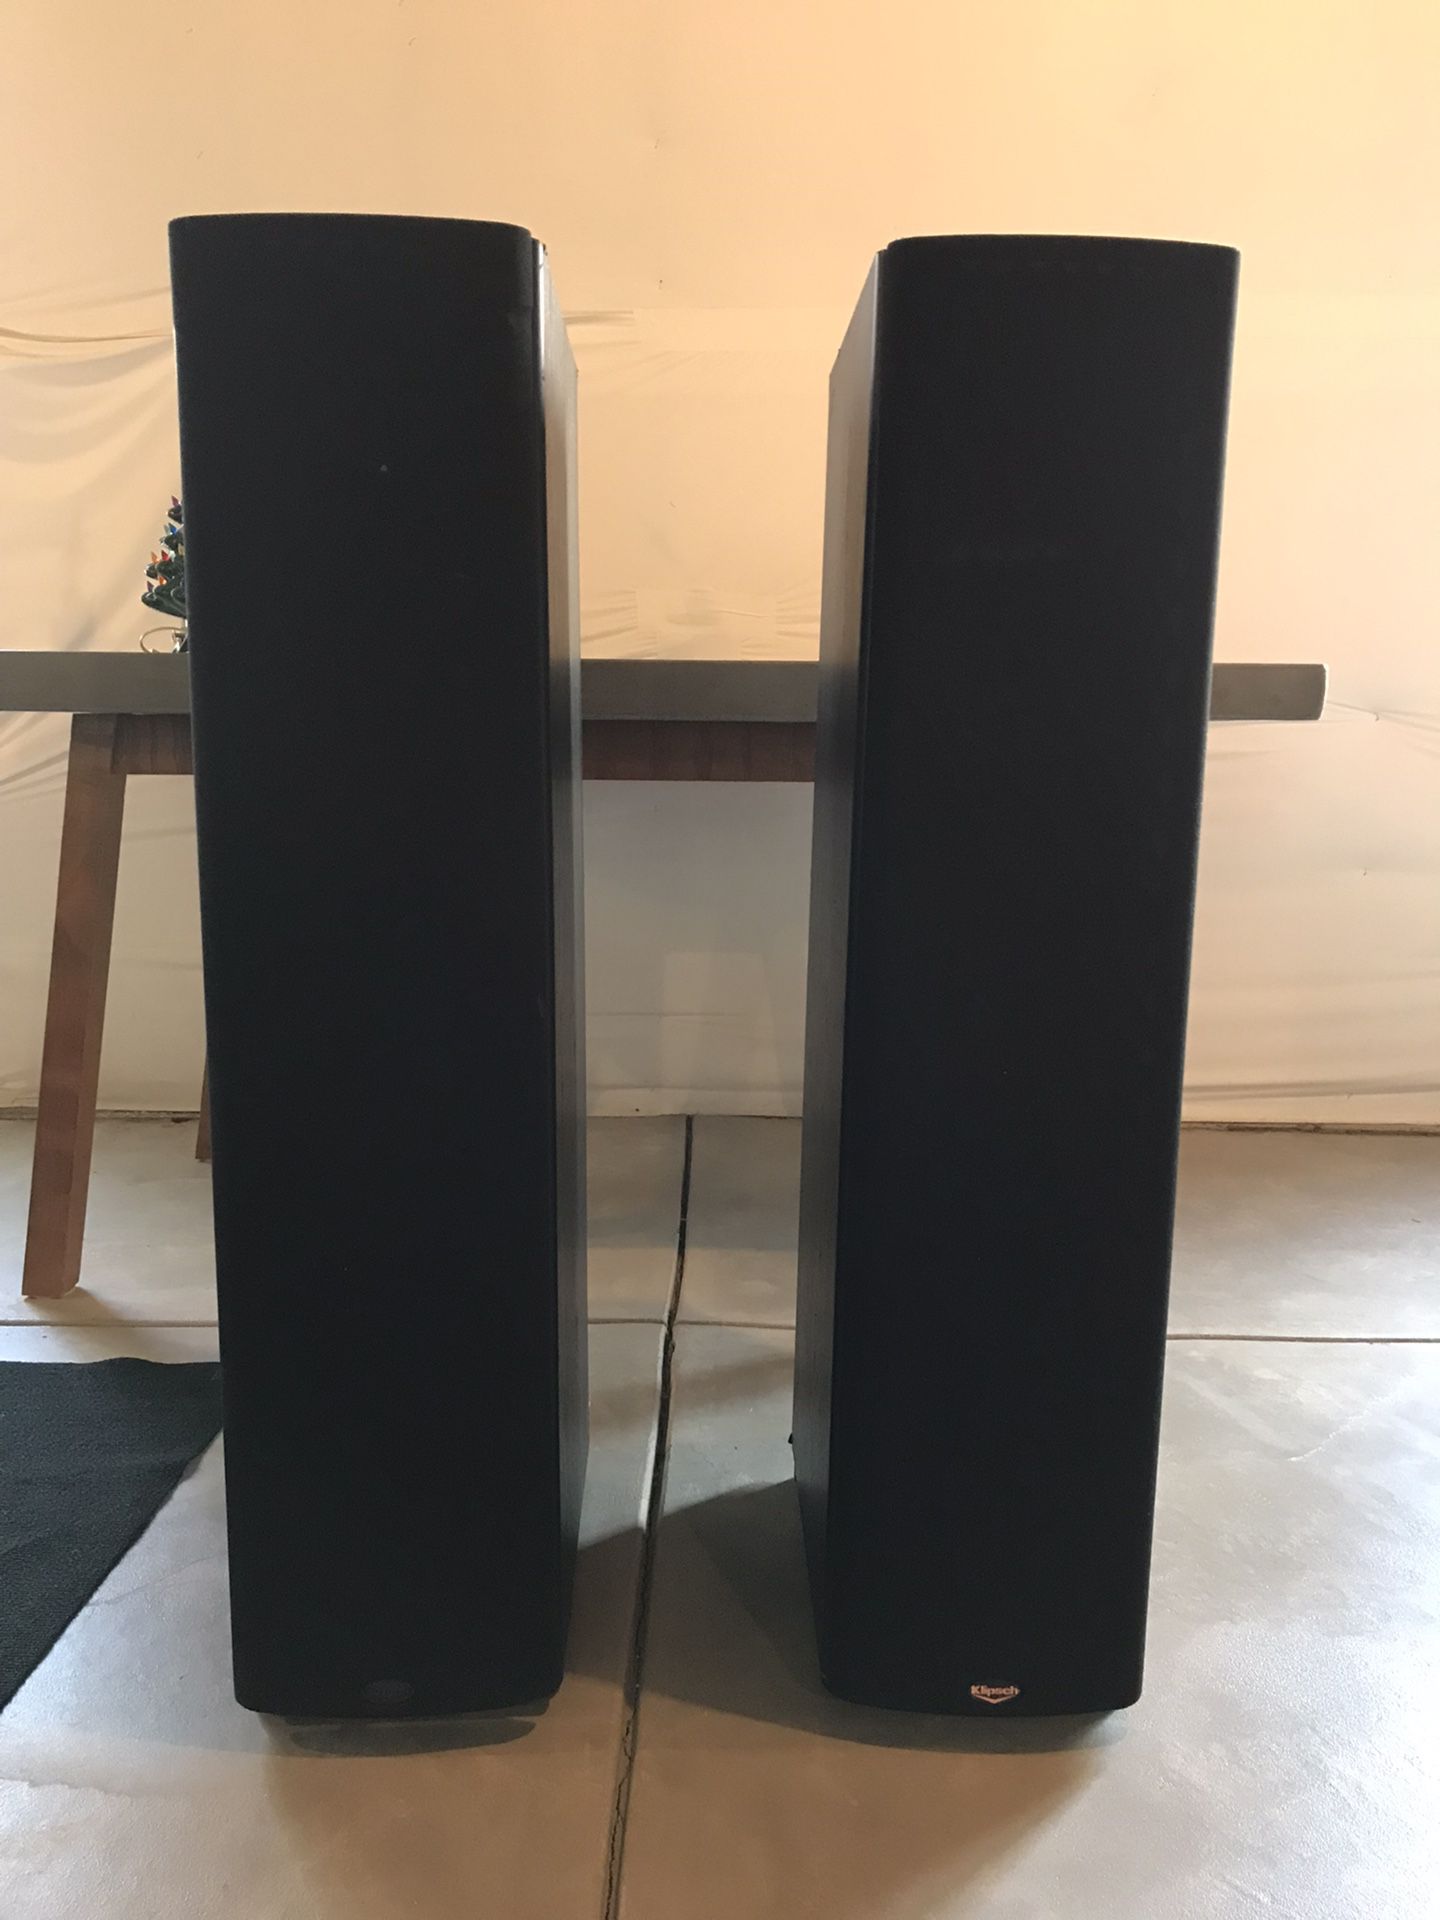 Klipsch SF-3 Tower Speakers 